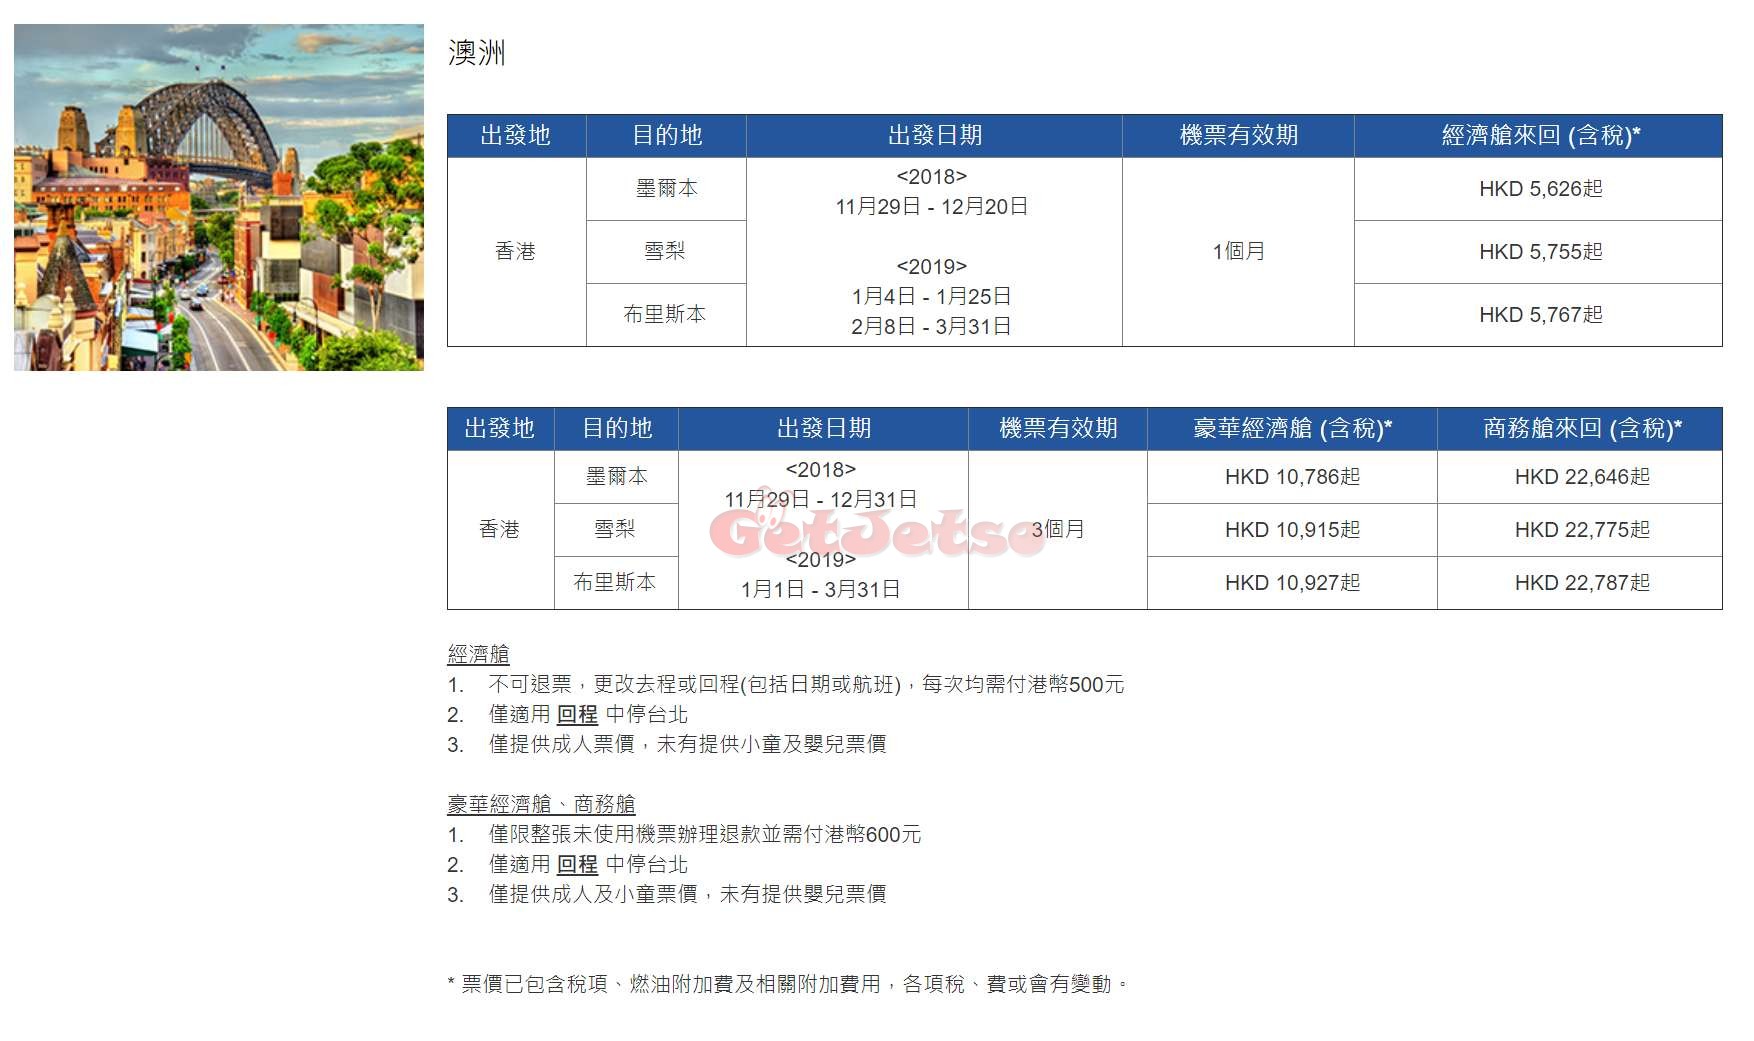 中華航空低至67限時機票優惠(至18年12月4日)圖片5